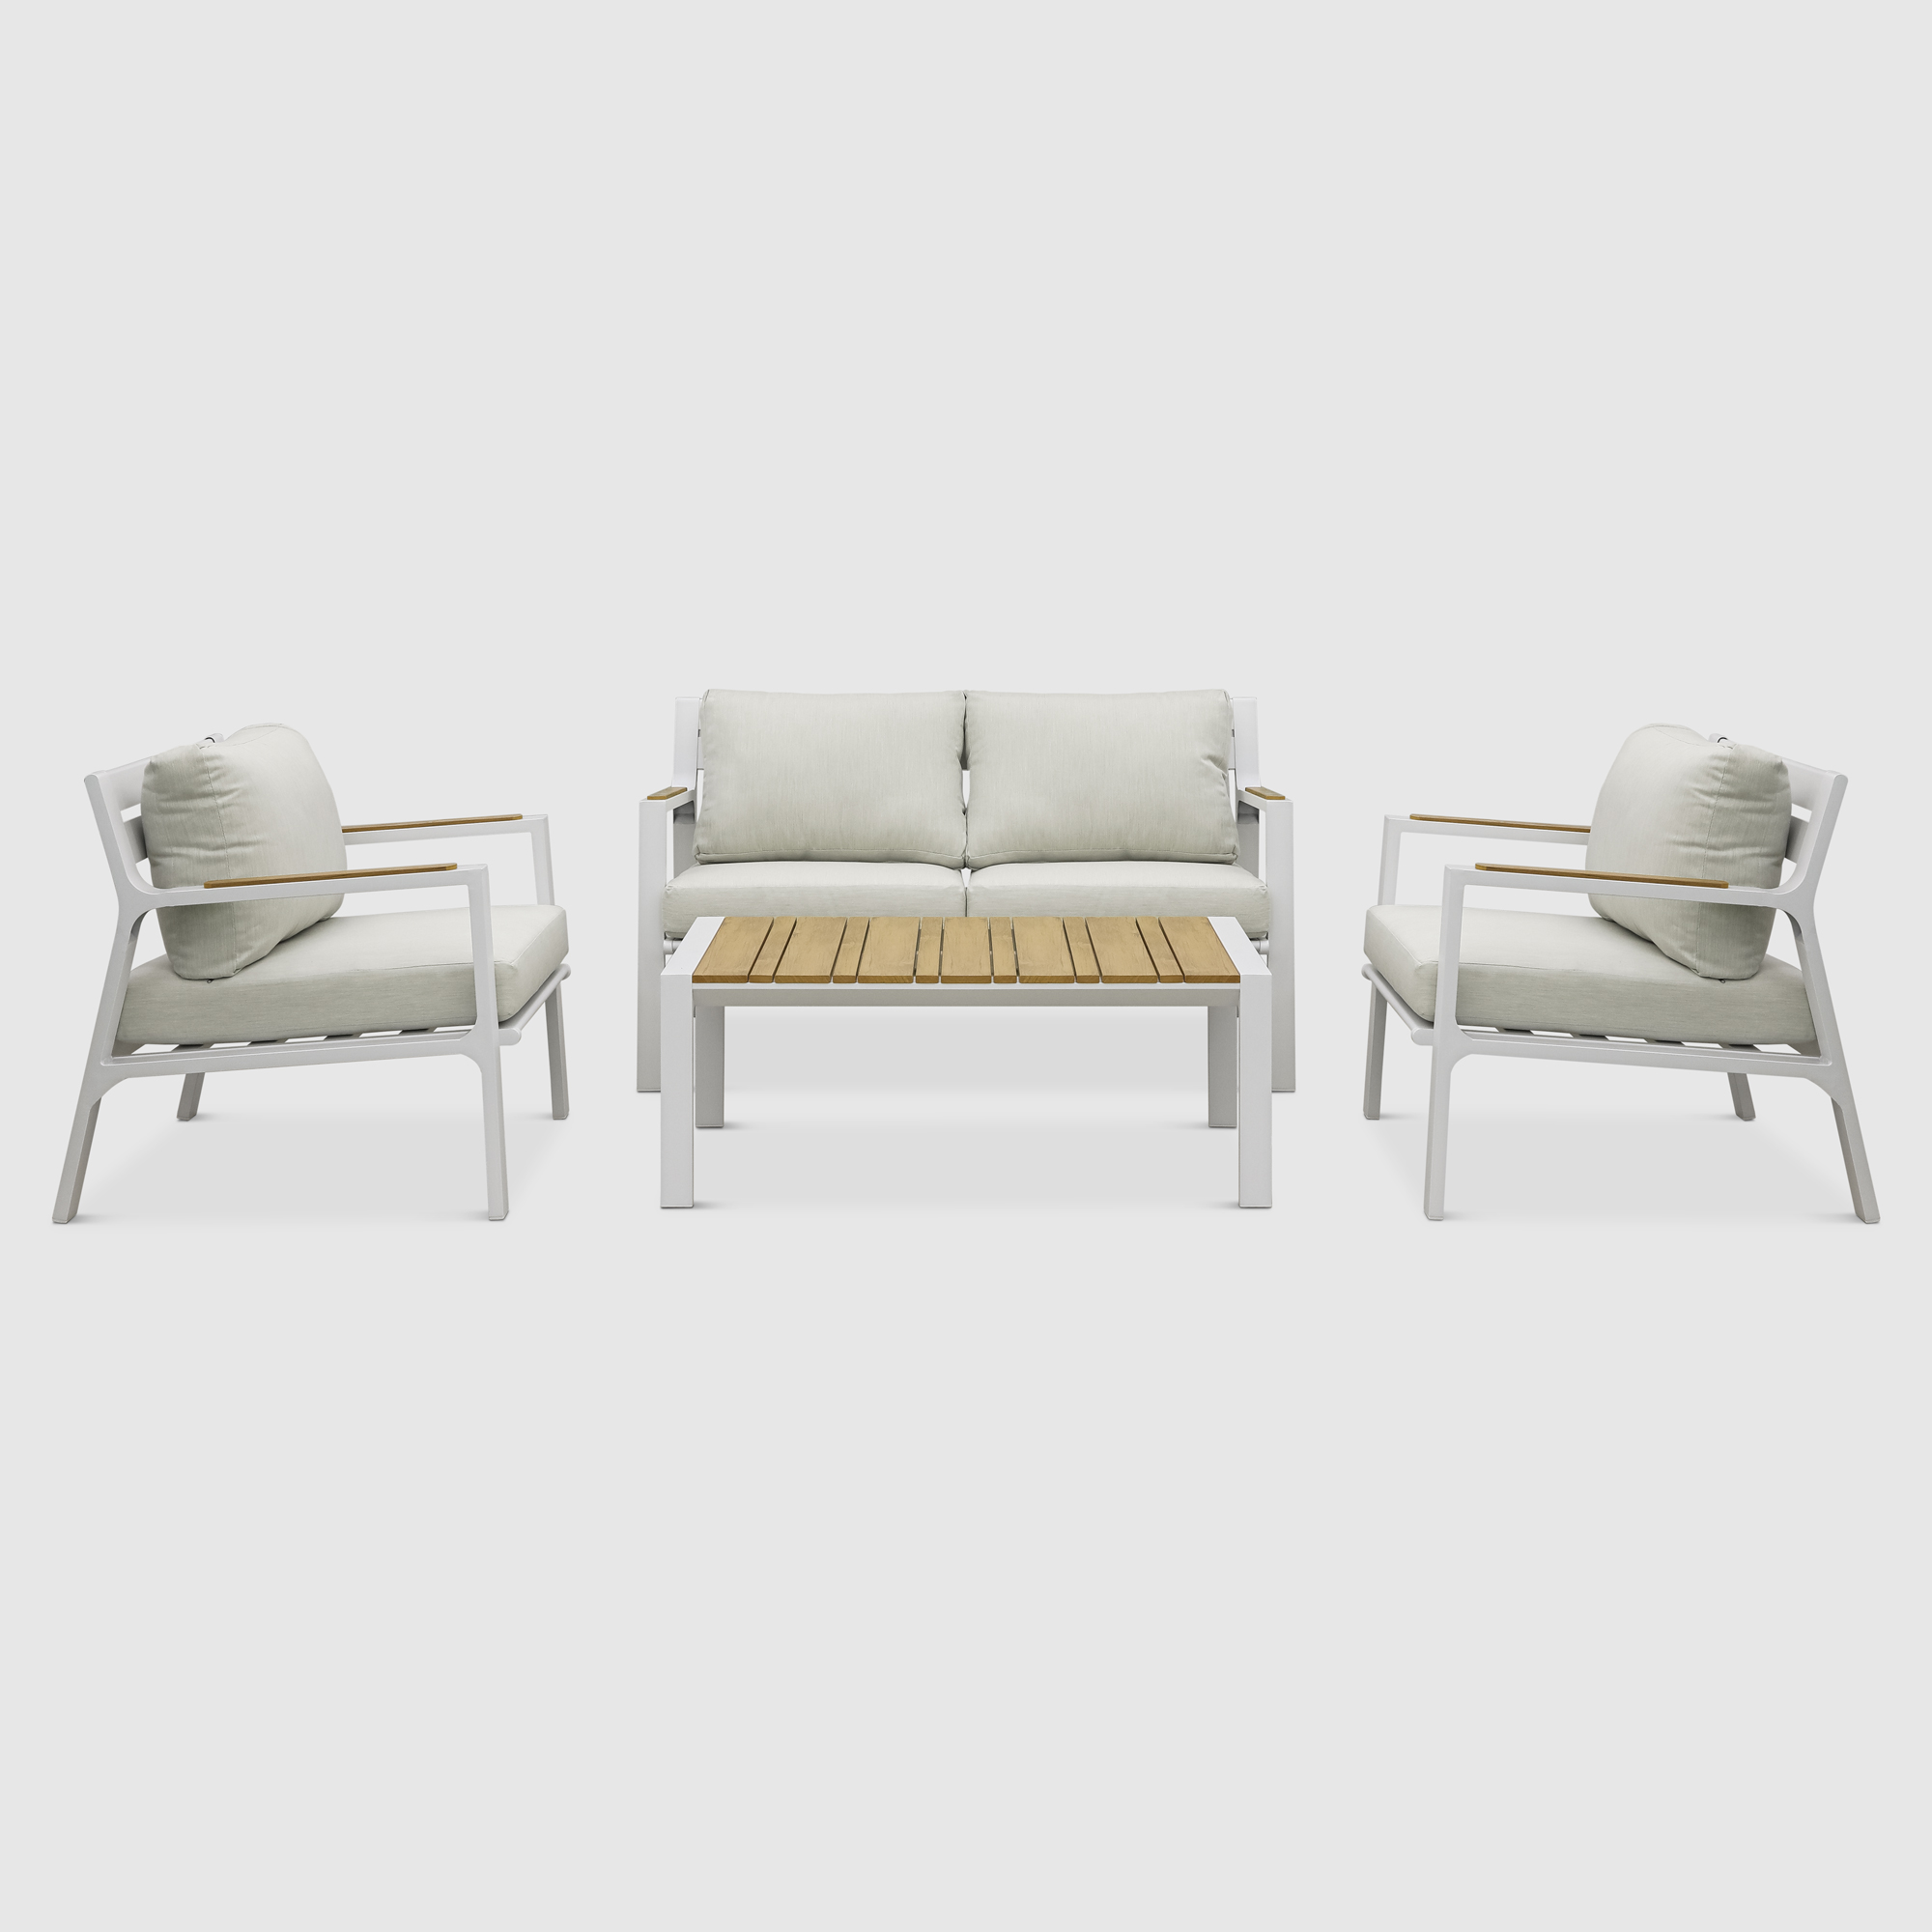 Комплект мебели Bizzotto Ernst белый с подушками 4 предмета зонт bizzotto rialto 3x4 база 0795165 0795045